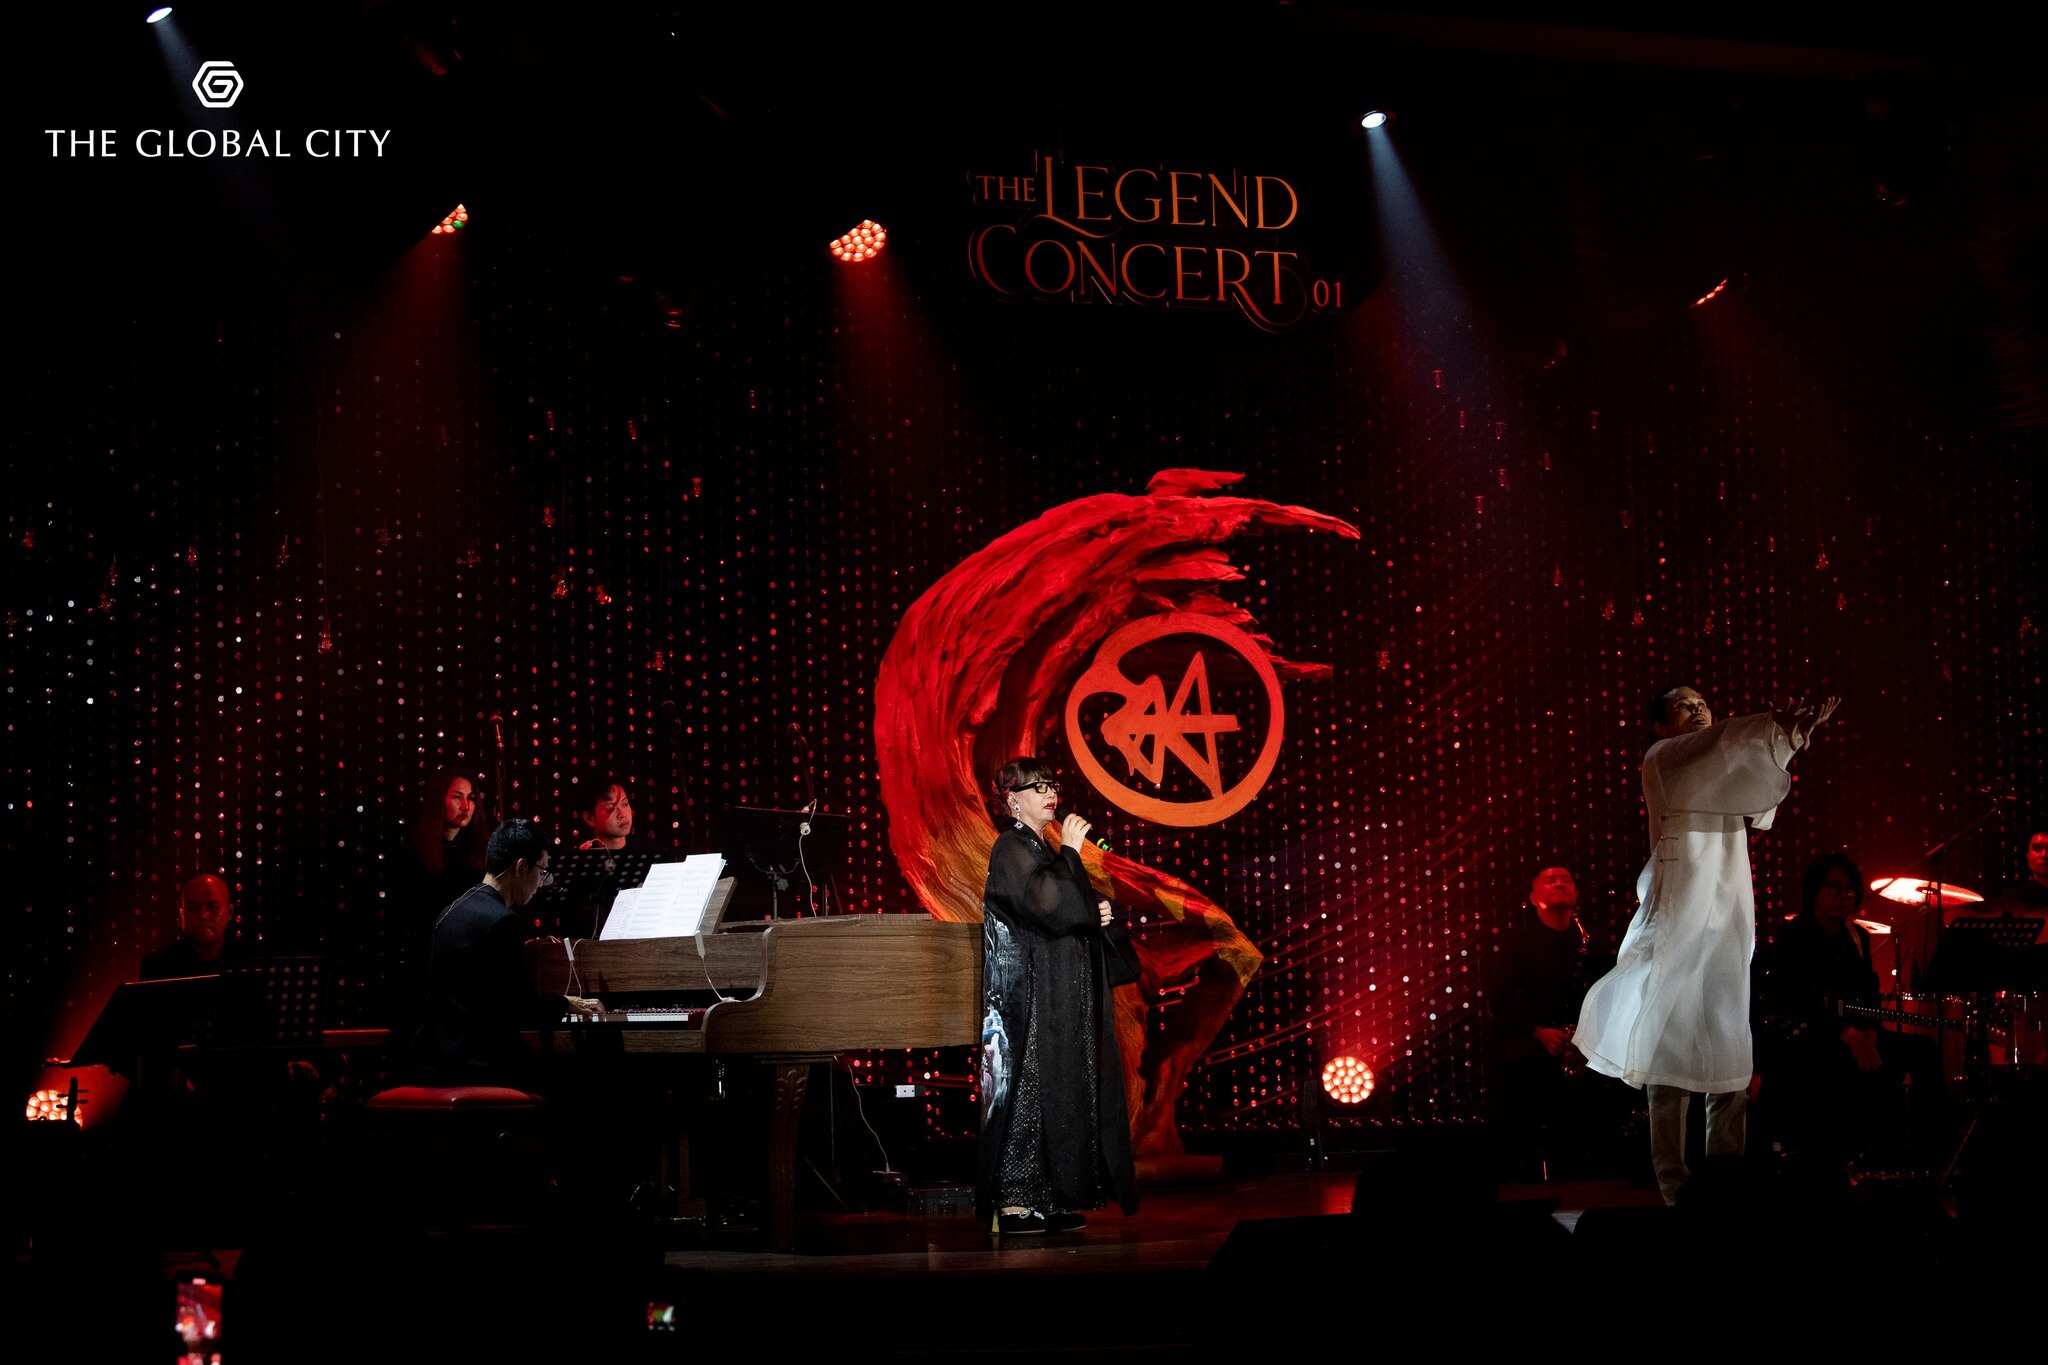 Sự kiện triển lãm The Legend Concert 01 - Trịnh Công Sơn